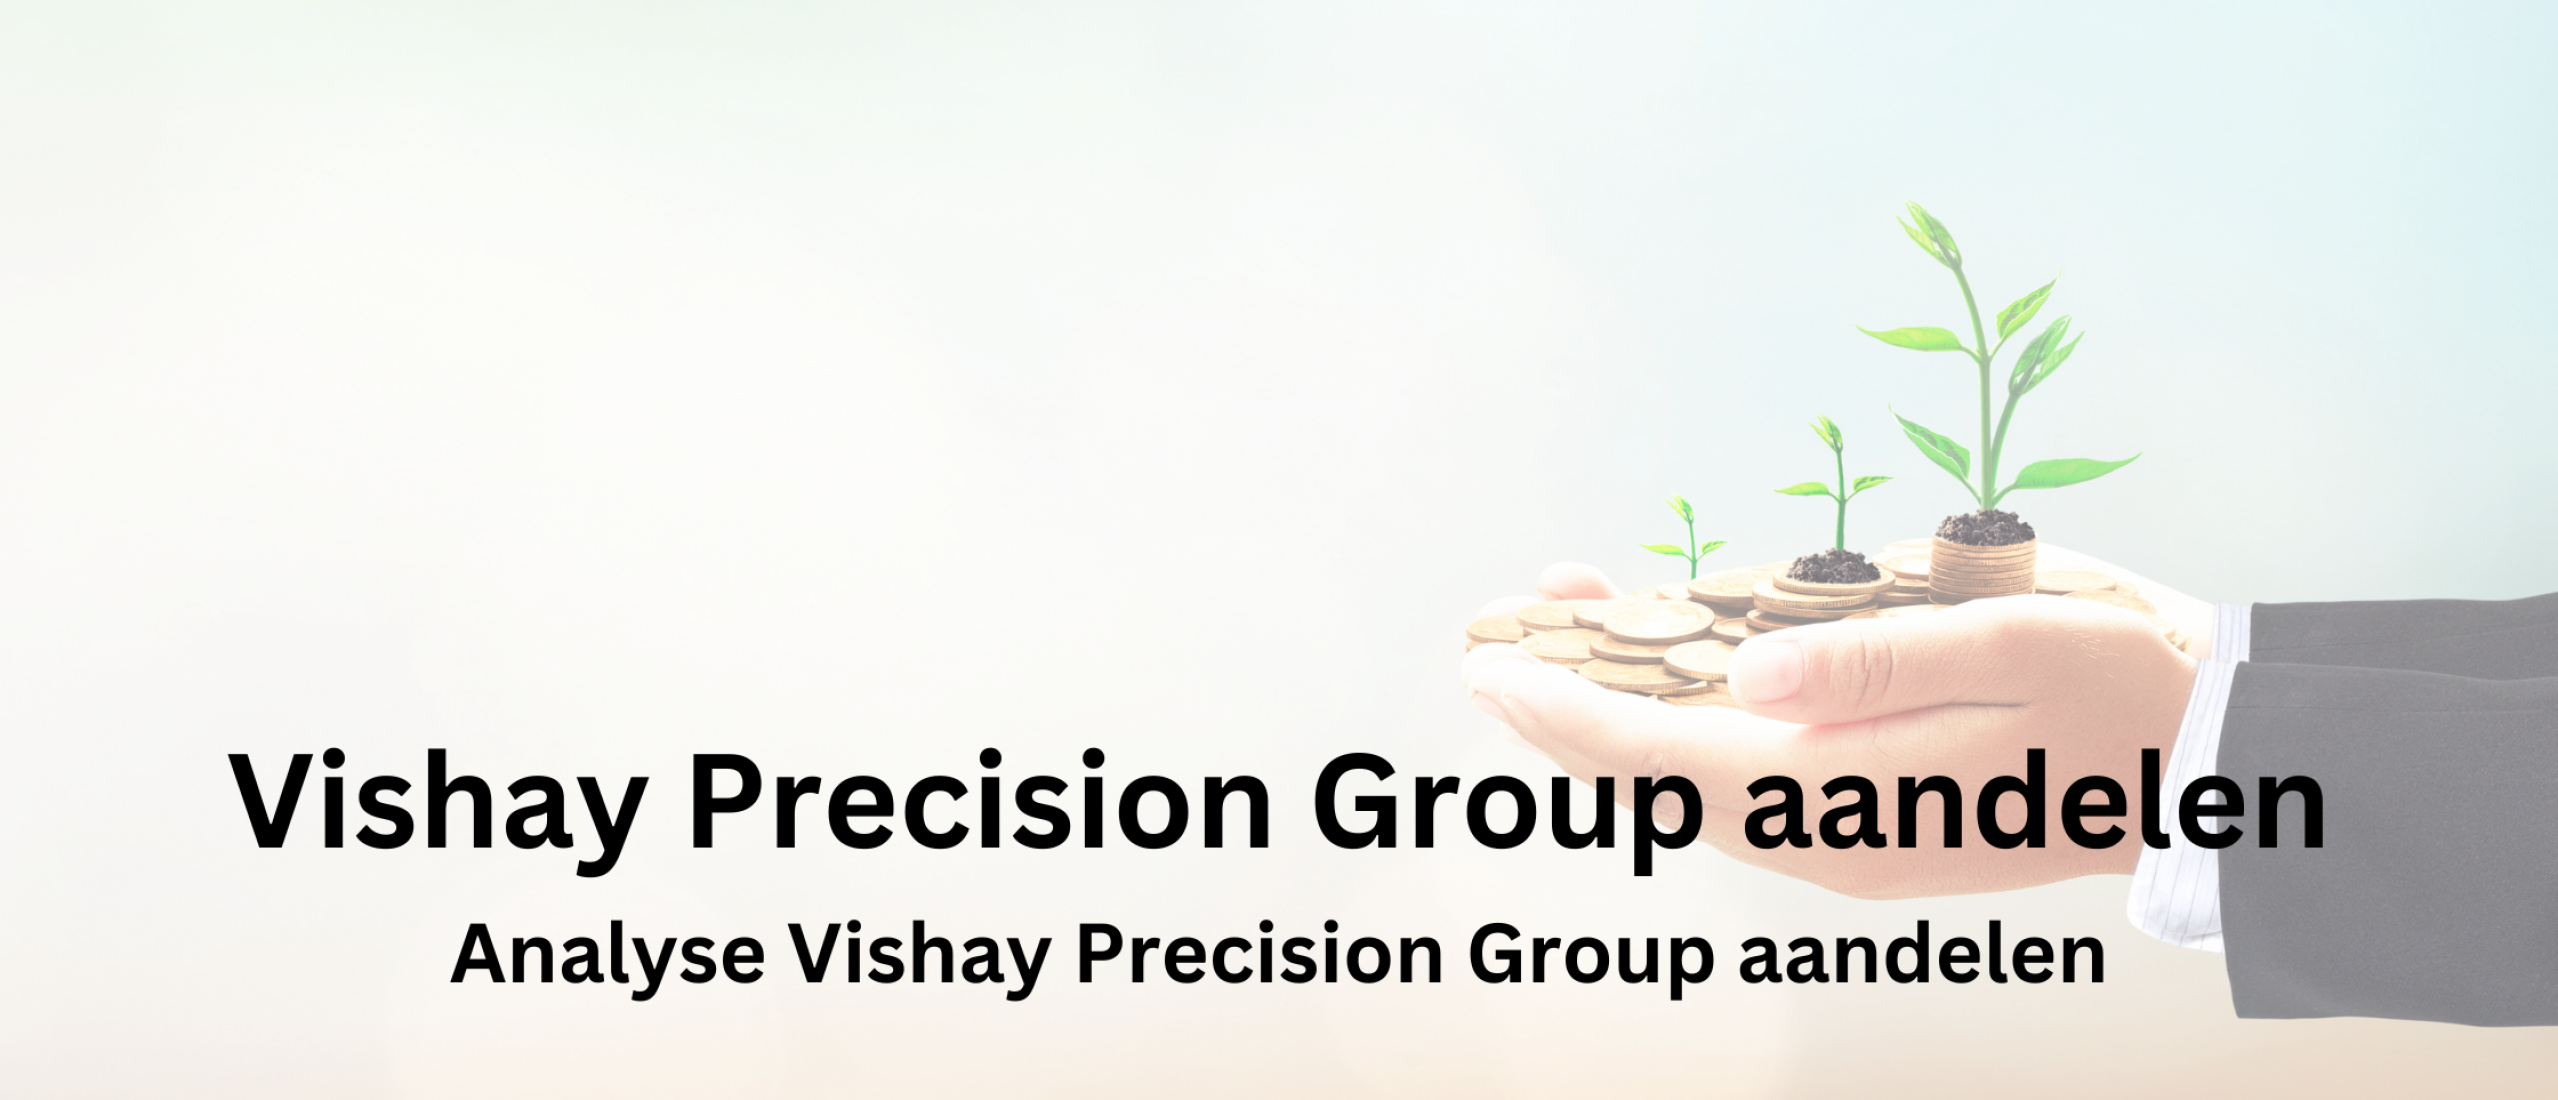 aandelen-kopen-vishay-precision-group-